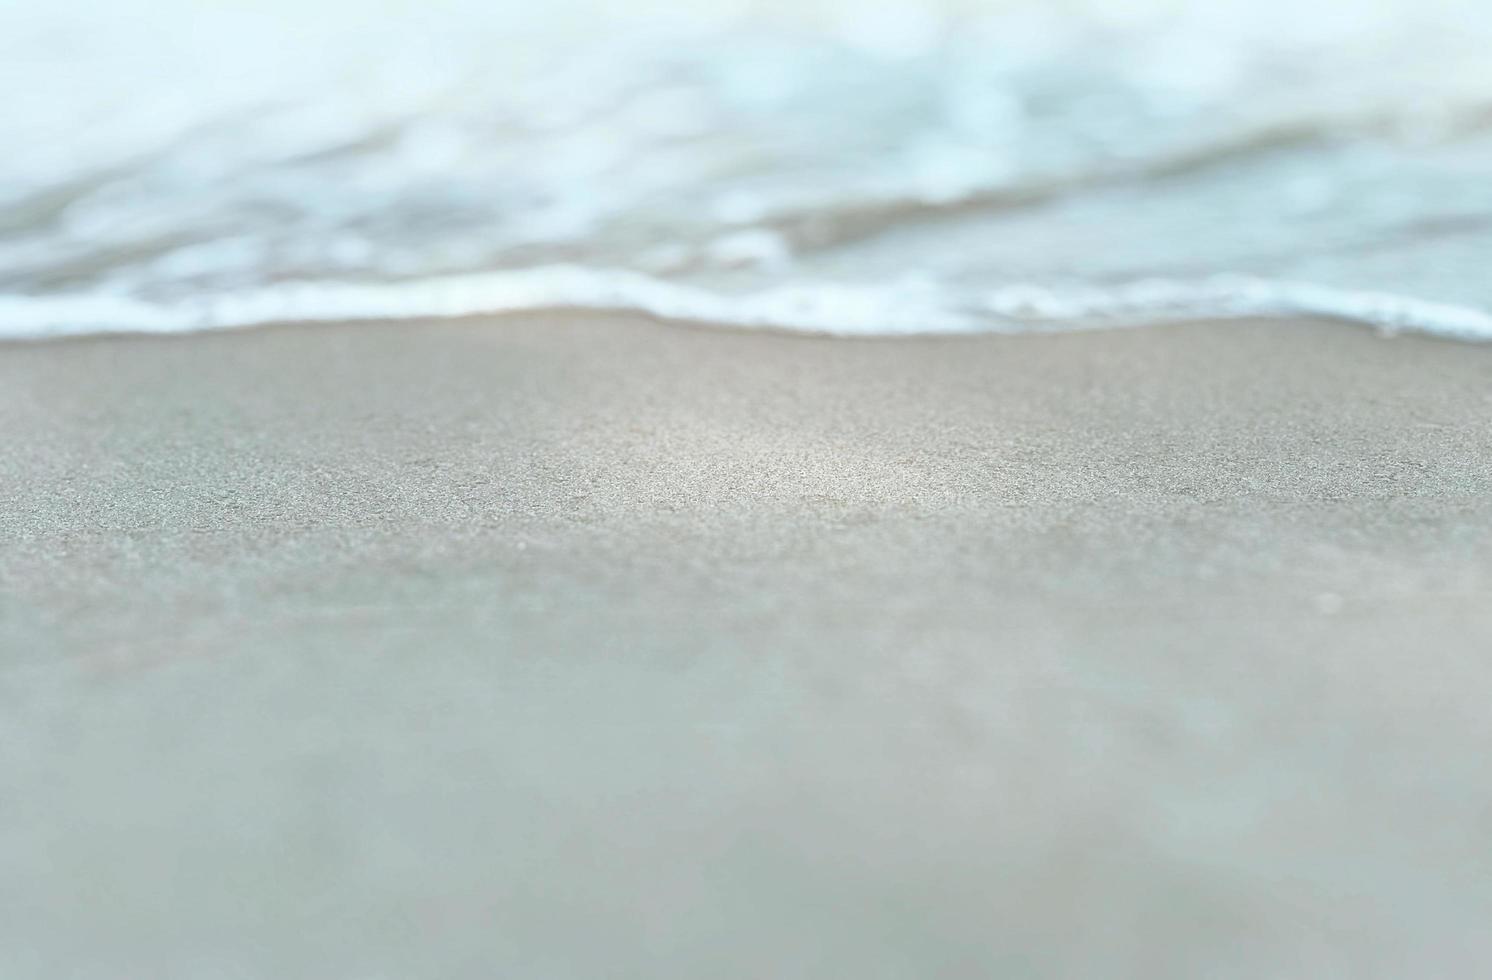 fundo de praia com areia romântica foto